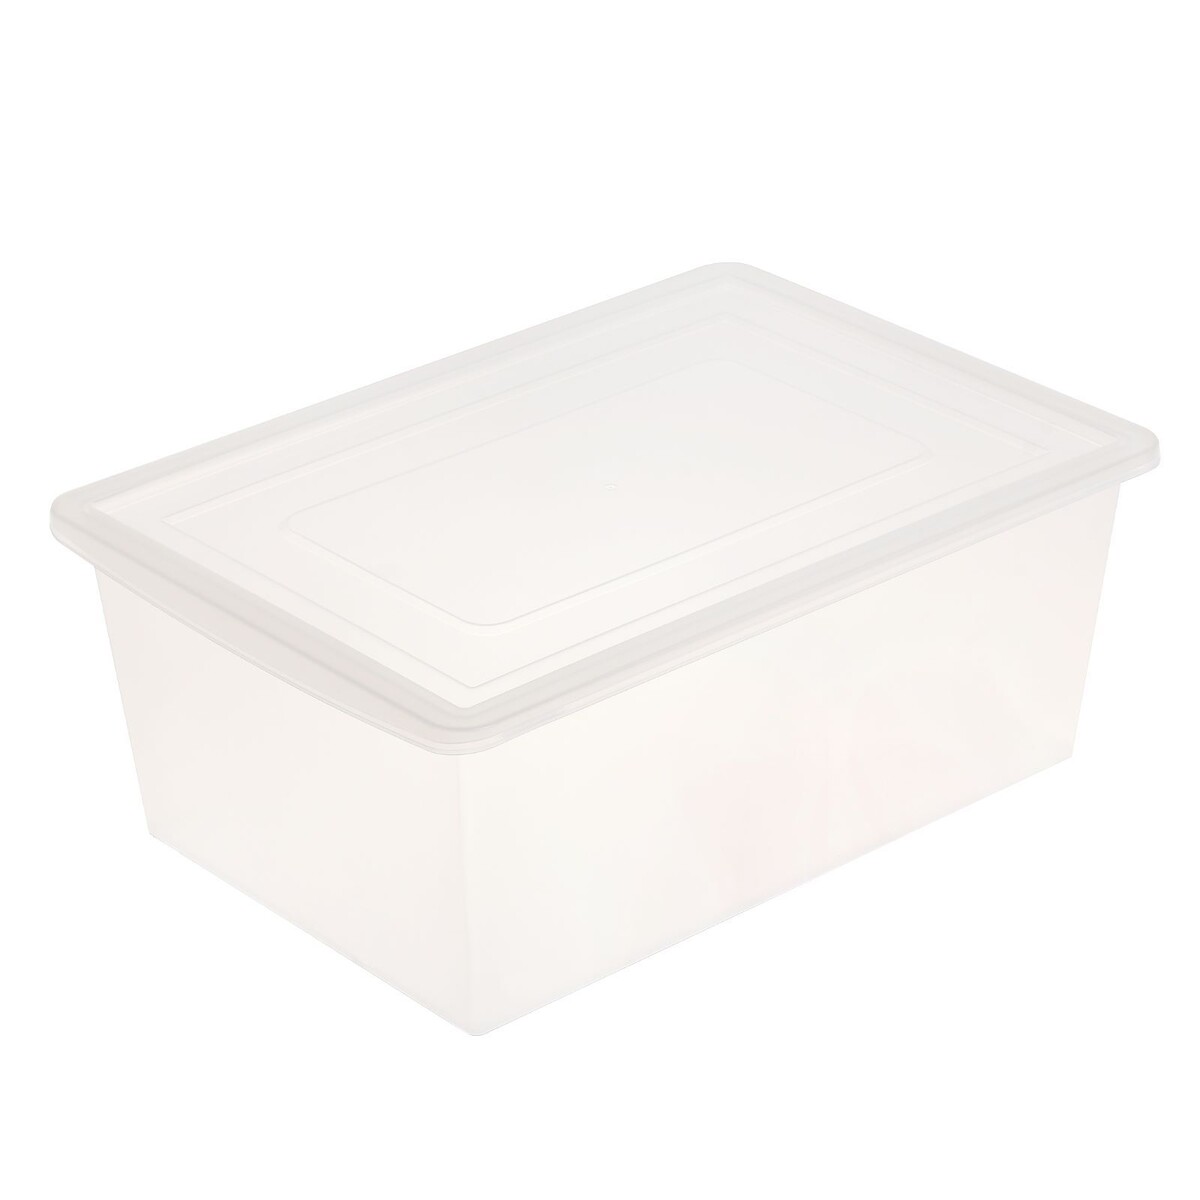 Ящик универсальный для хранения с крышкой, объем 30л, цвет прозрачно-матовый